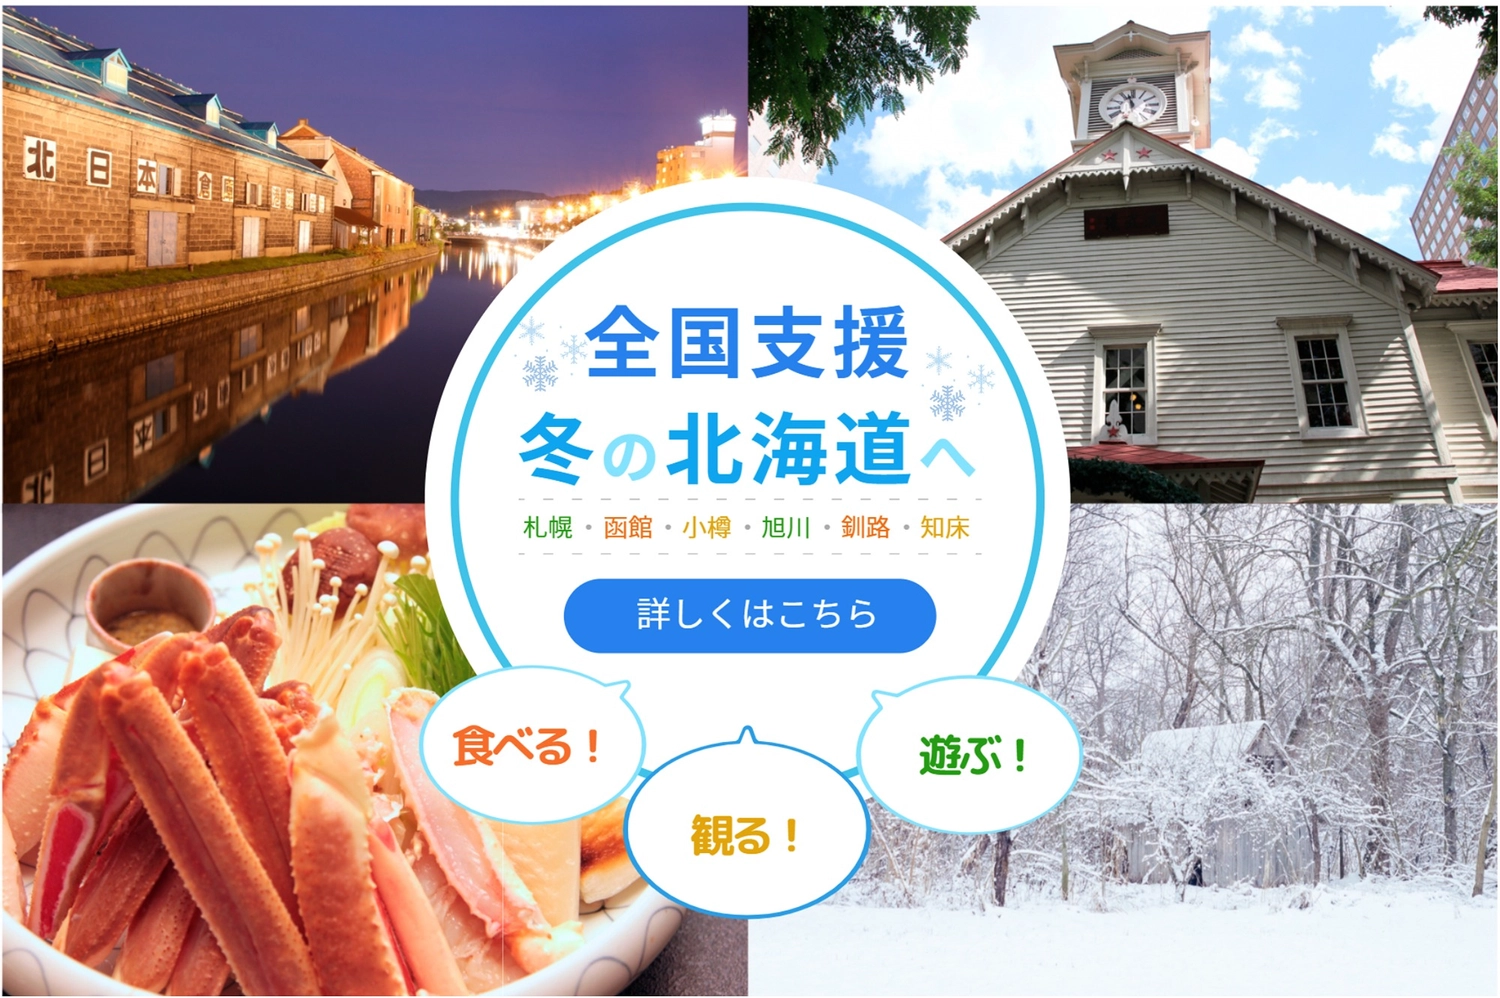 北海道写真満載で全国支援のバナー, winter, crab, Clock tower, Banner template